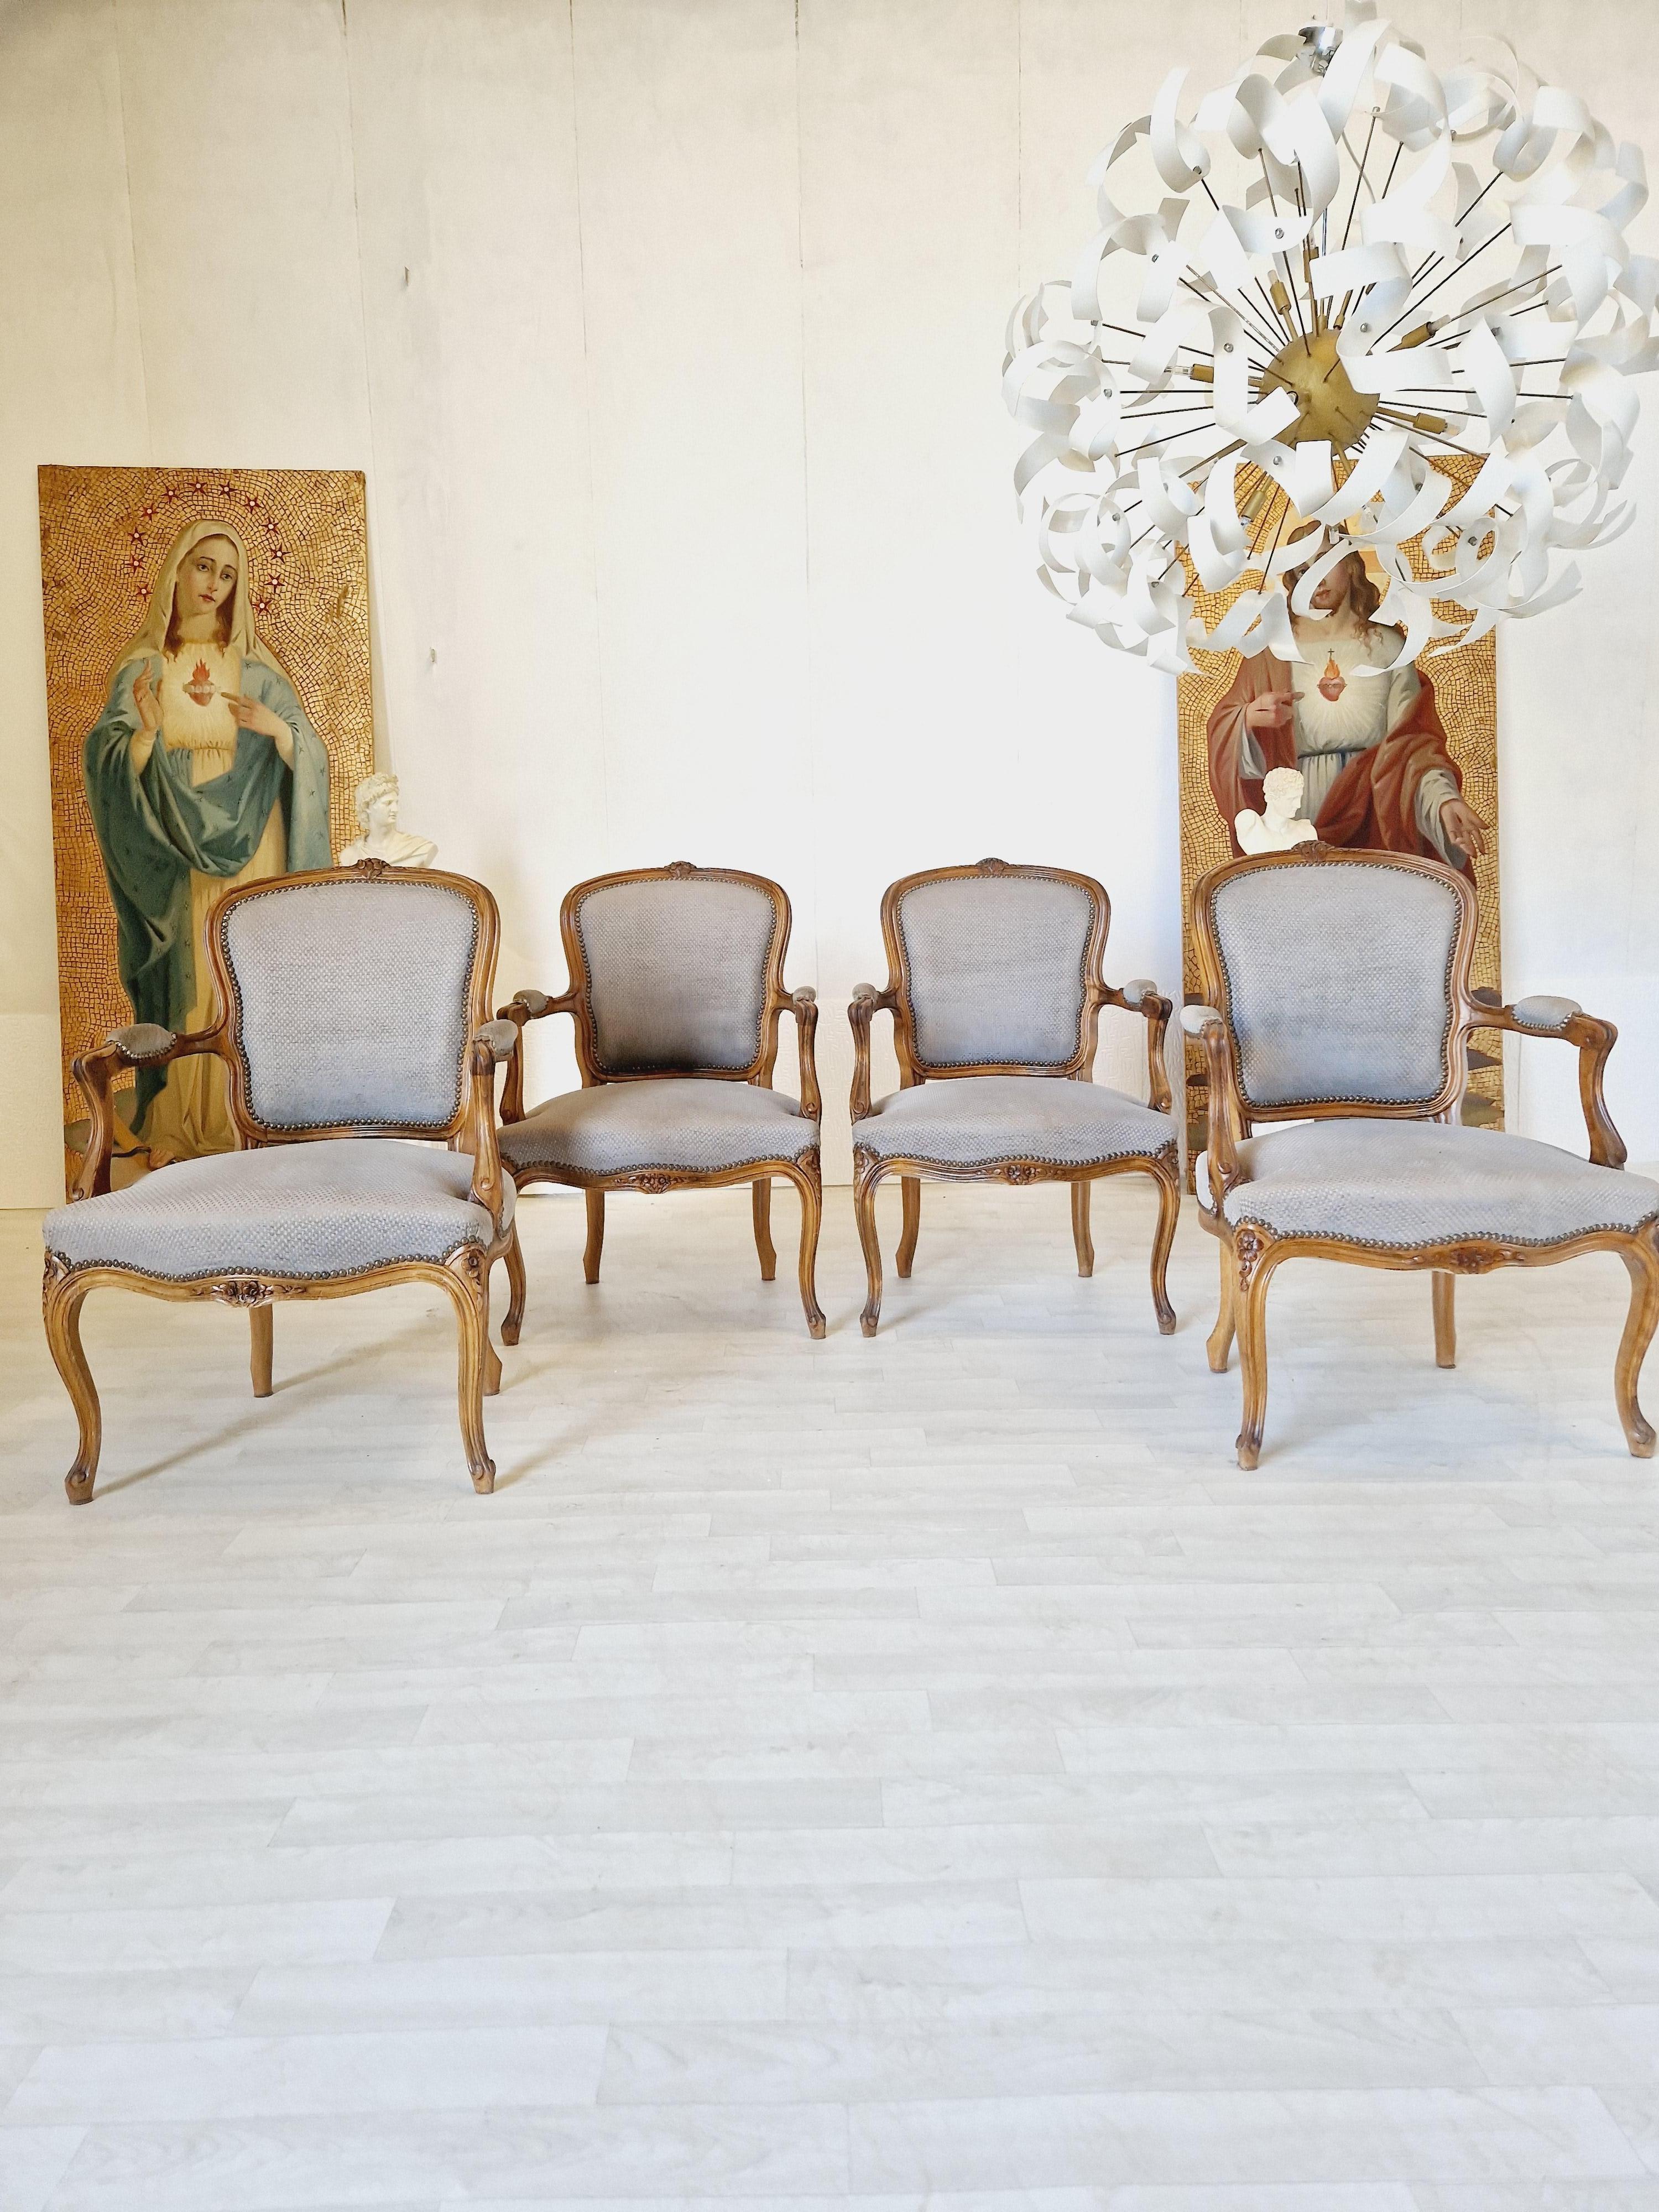 Ensemble de 4 fauteuils de style Louis XV avec tapisserie grise.

Circa 1920. Magnifique boiserie en noyer sculpté en bon état. Les sièges gris rembourrés présentent de légères marques sur les accoudoirs, ce qui correspond à l'âge et à l'usage.

Les